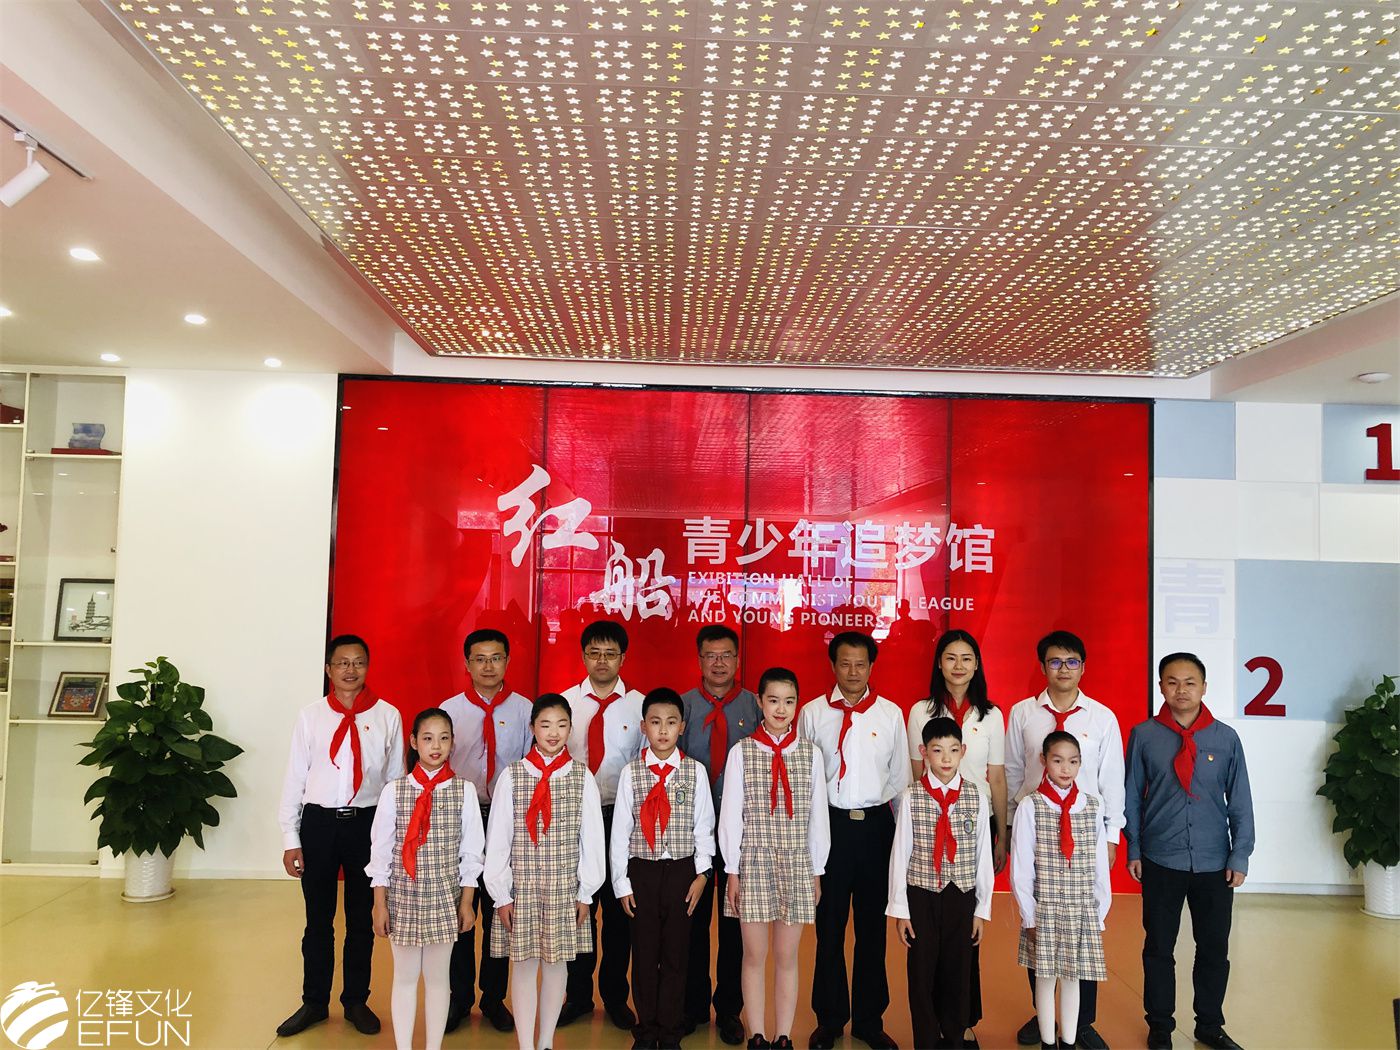 嘉兴市纪念中国少年先锋队建队70周年系列活动